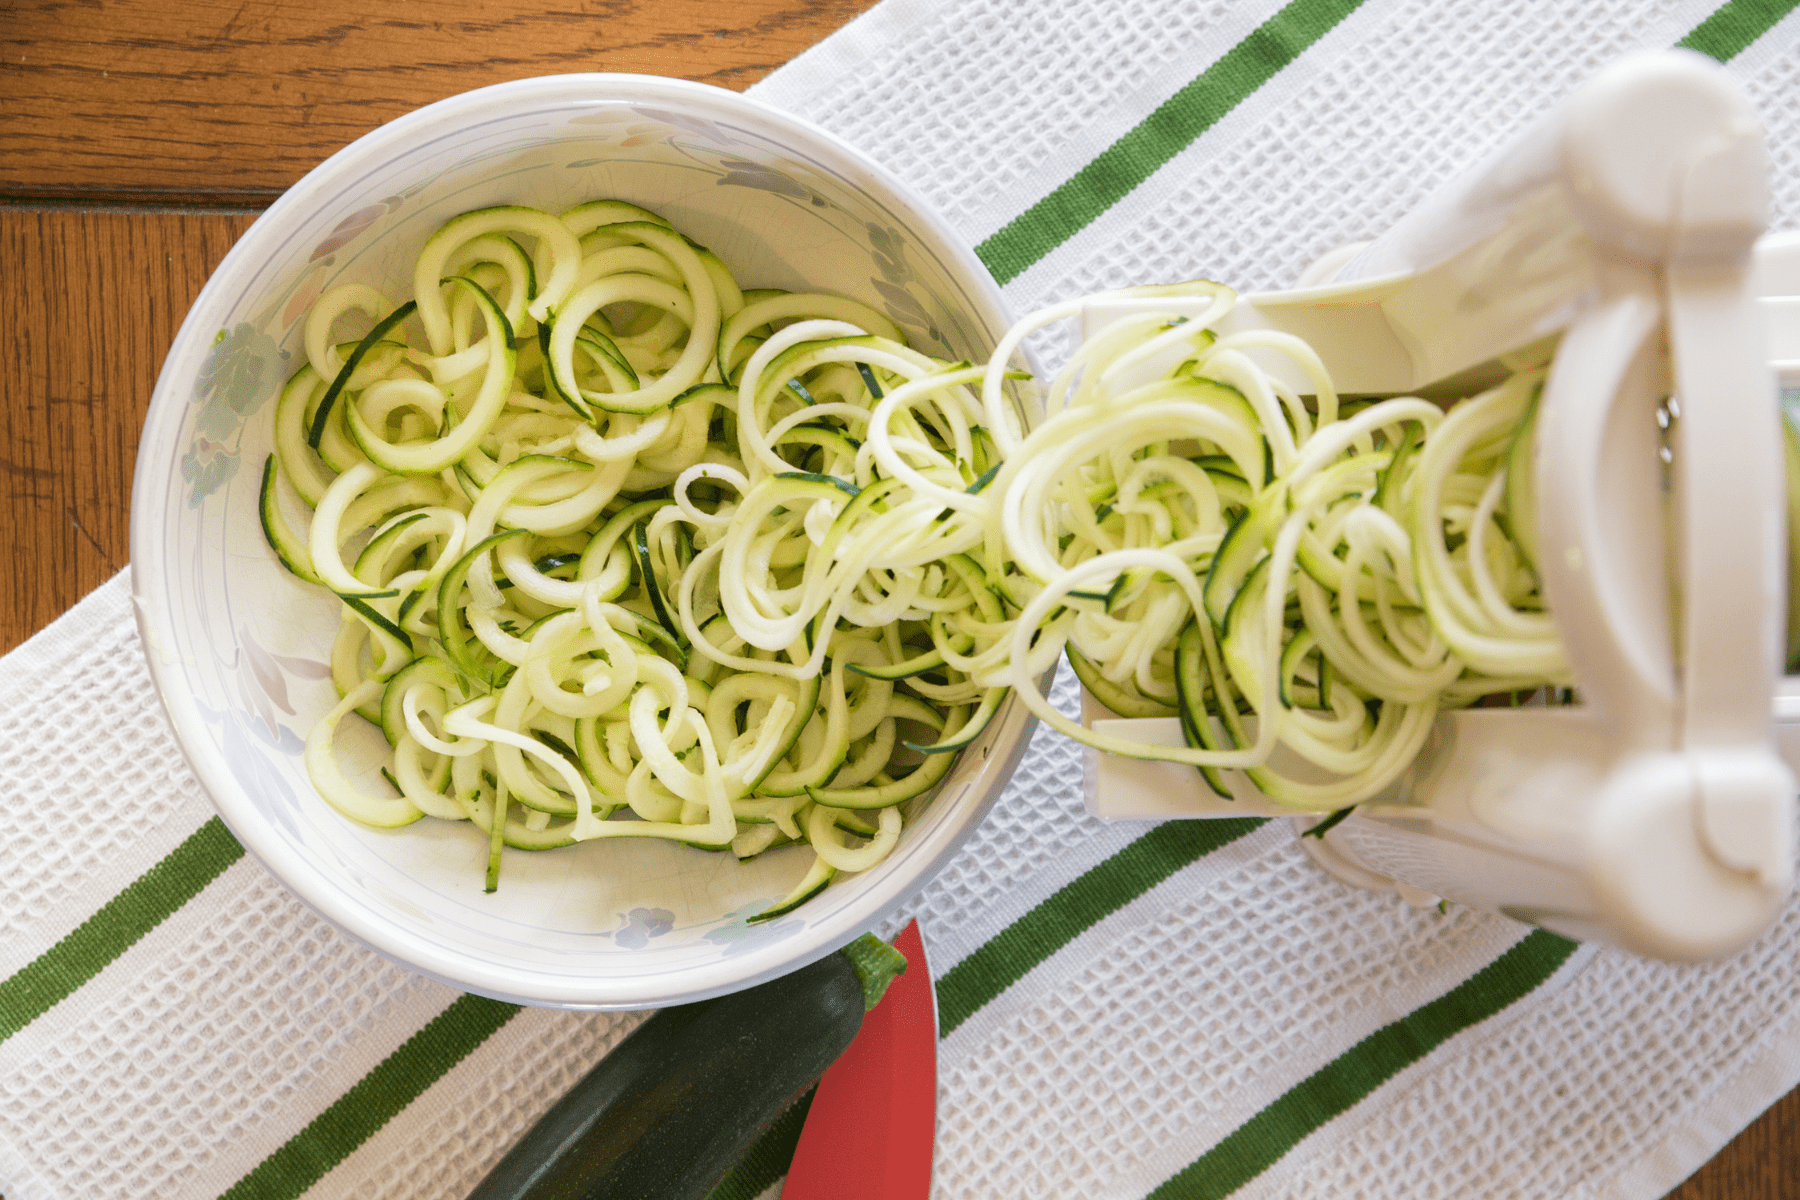 spiralize the zucchini